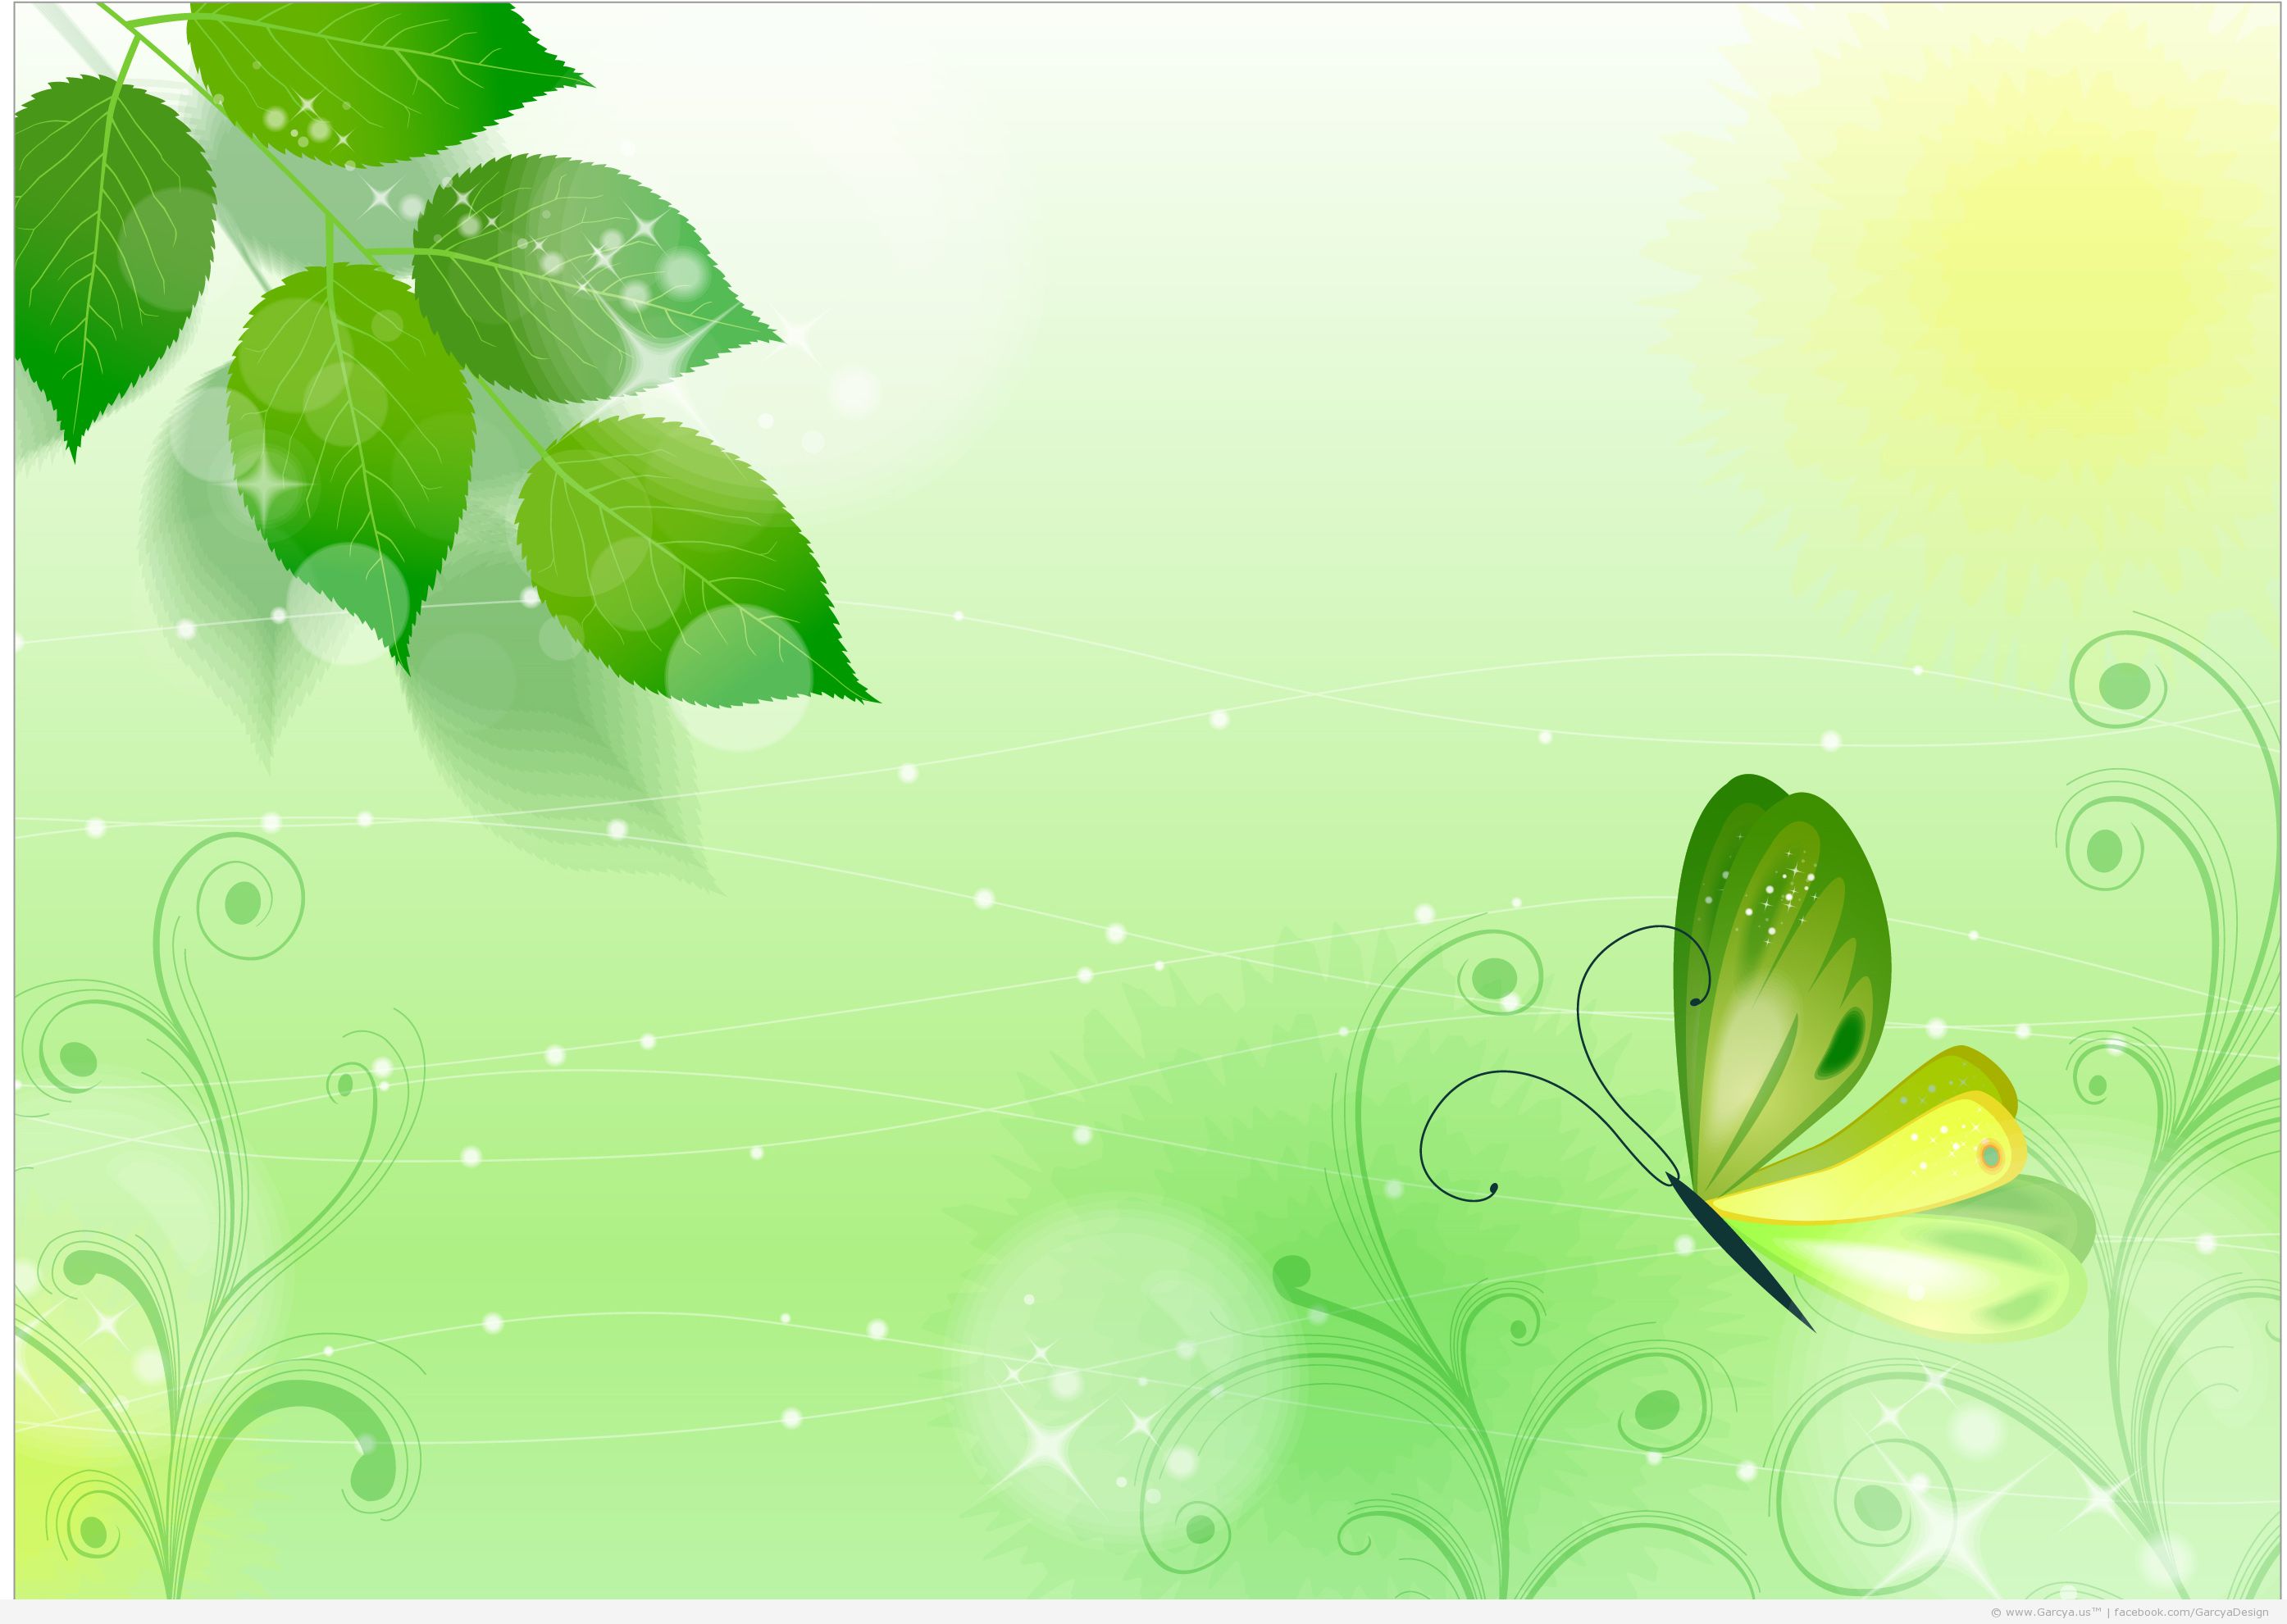 緑の壁紙デザイン,緑,葉,自然,工場,水